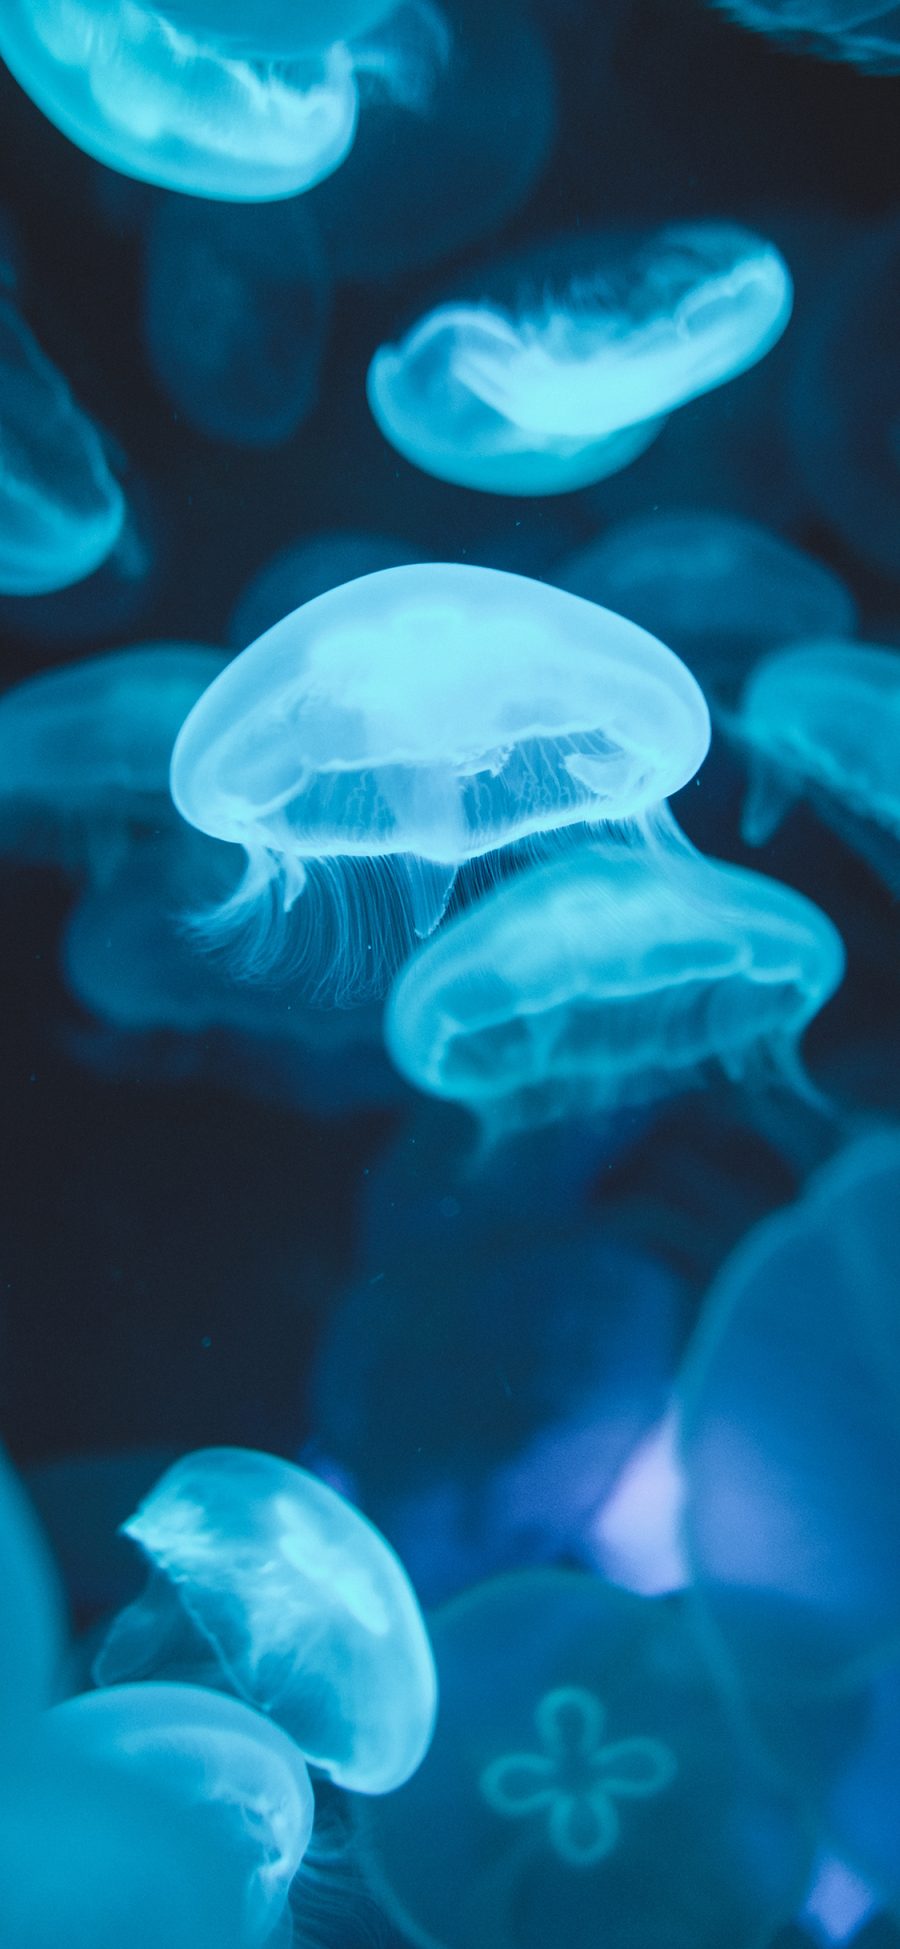 [2436×1125]水母 浮游 密集 透明 海蜇 苹果手机壁纸图片